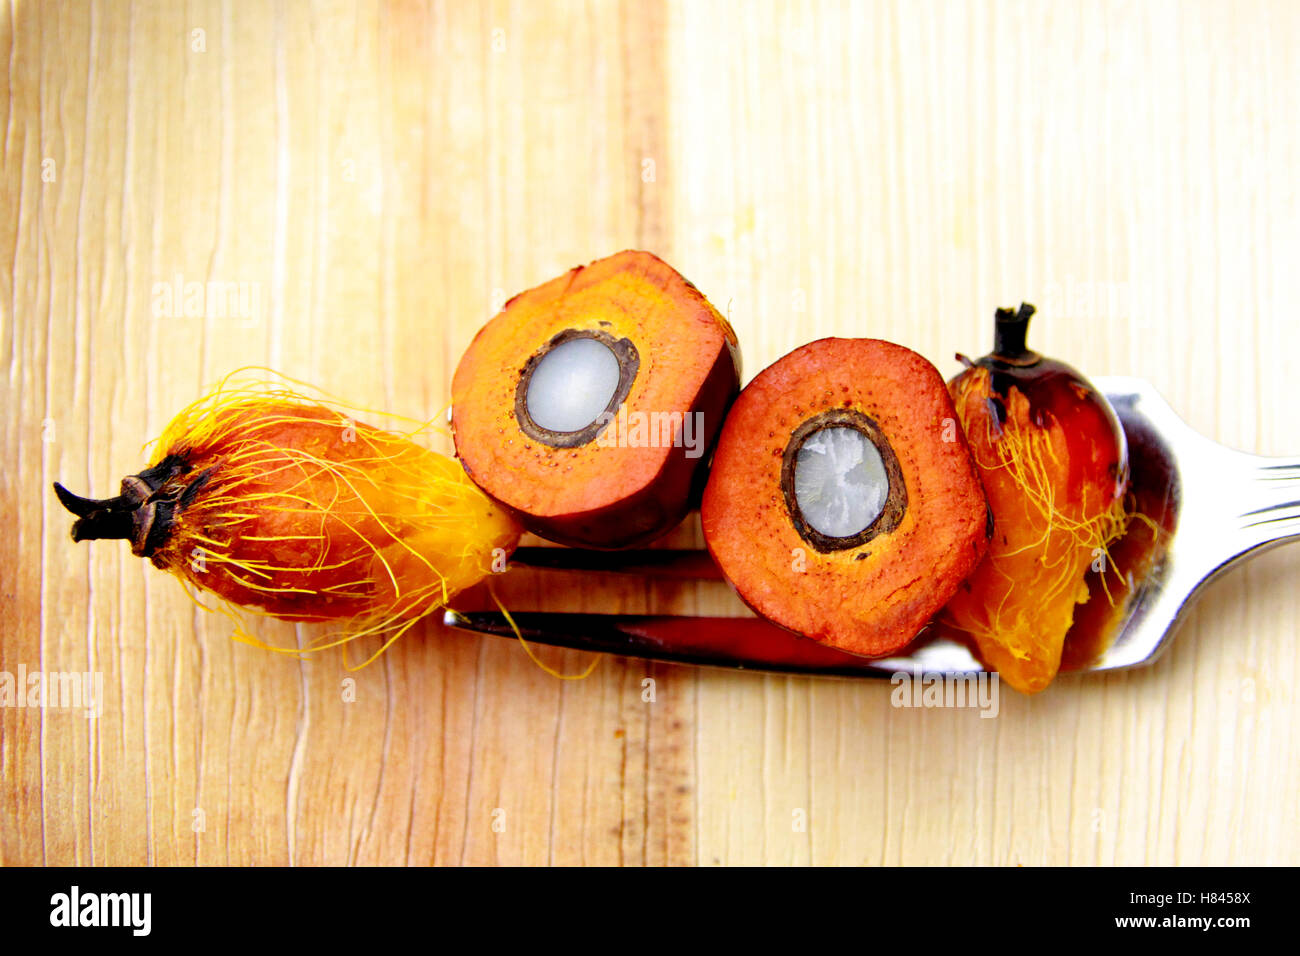 Olio di palma è un vegetale commestibile olio derivato dal mesocarpo (polpa di colore rossastro) del frutto delle palme da olio Foto Stock